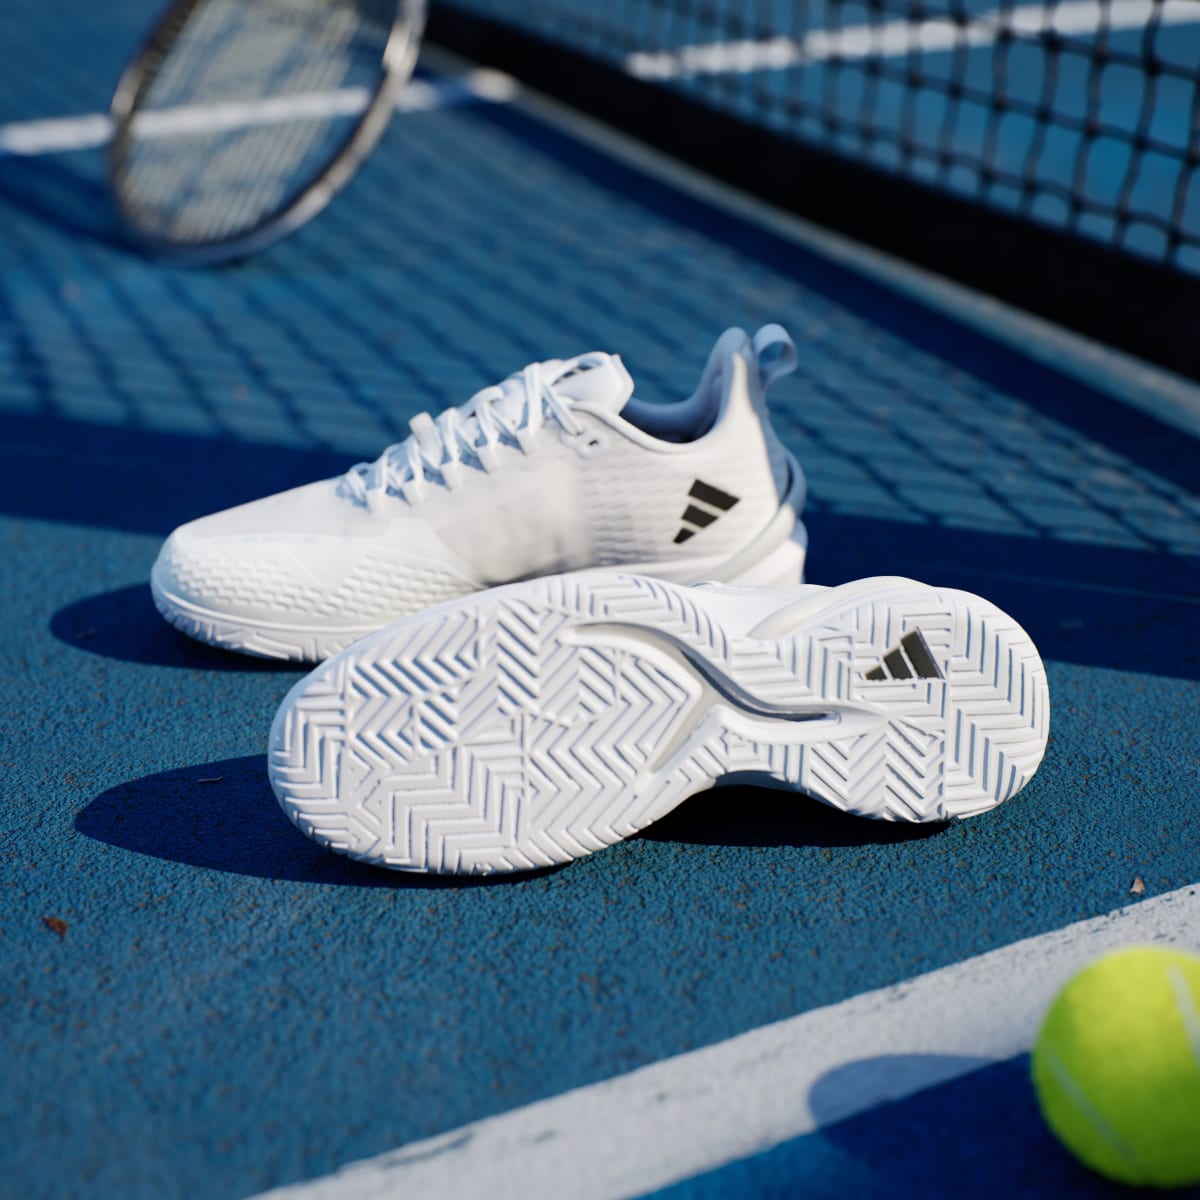 Adidas Adizero Cybersonic Tennis Shoes. 4